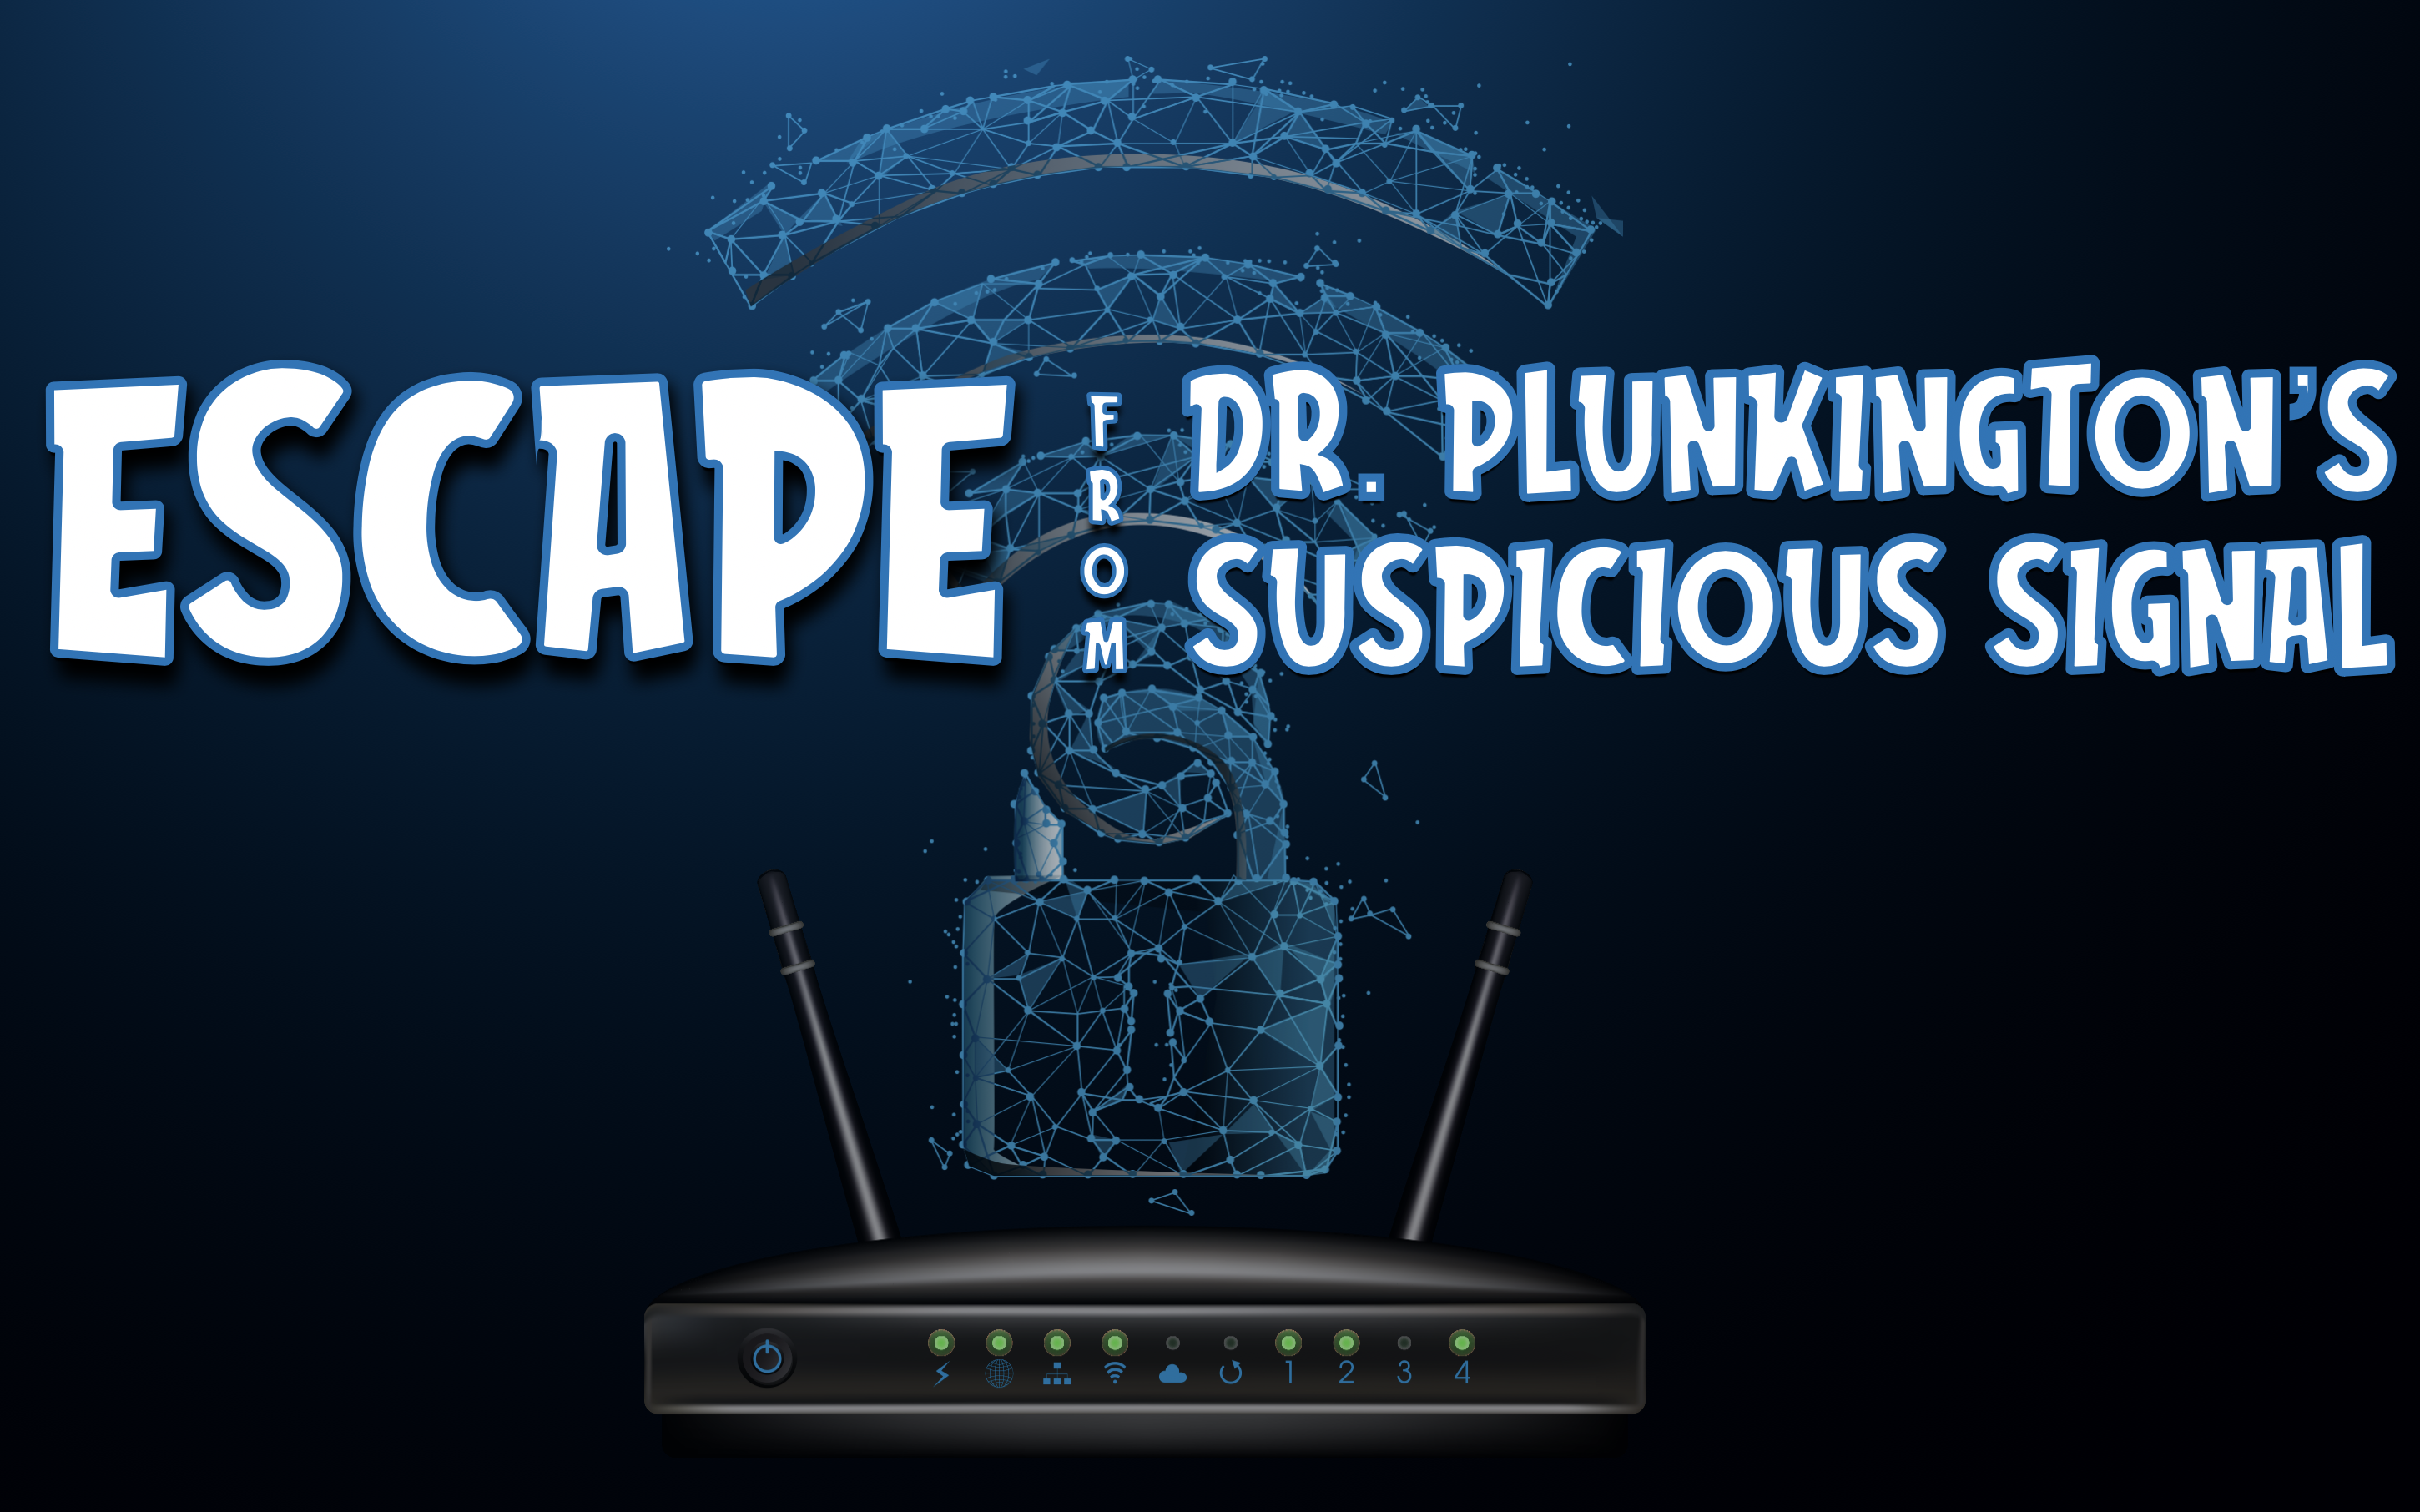 Escape Dr. Plunkington's Suspicious Signal Breakout Room